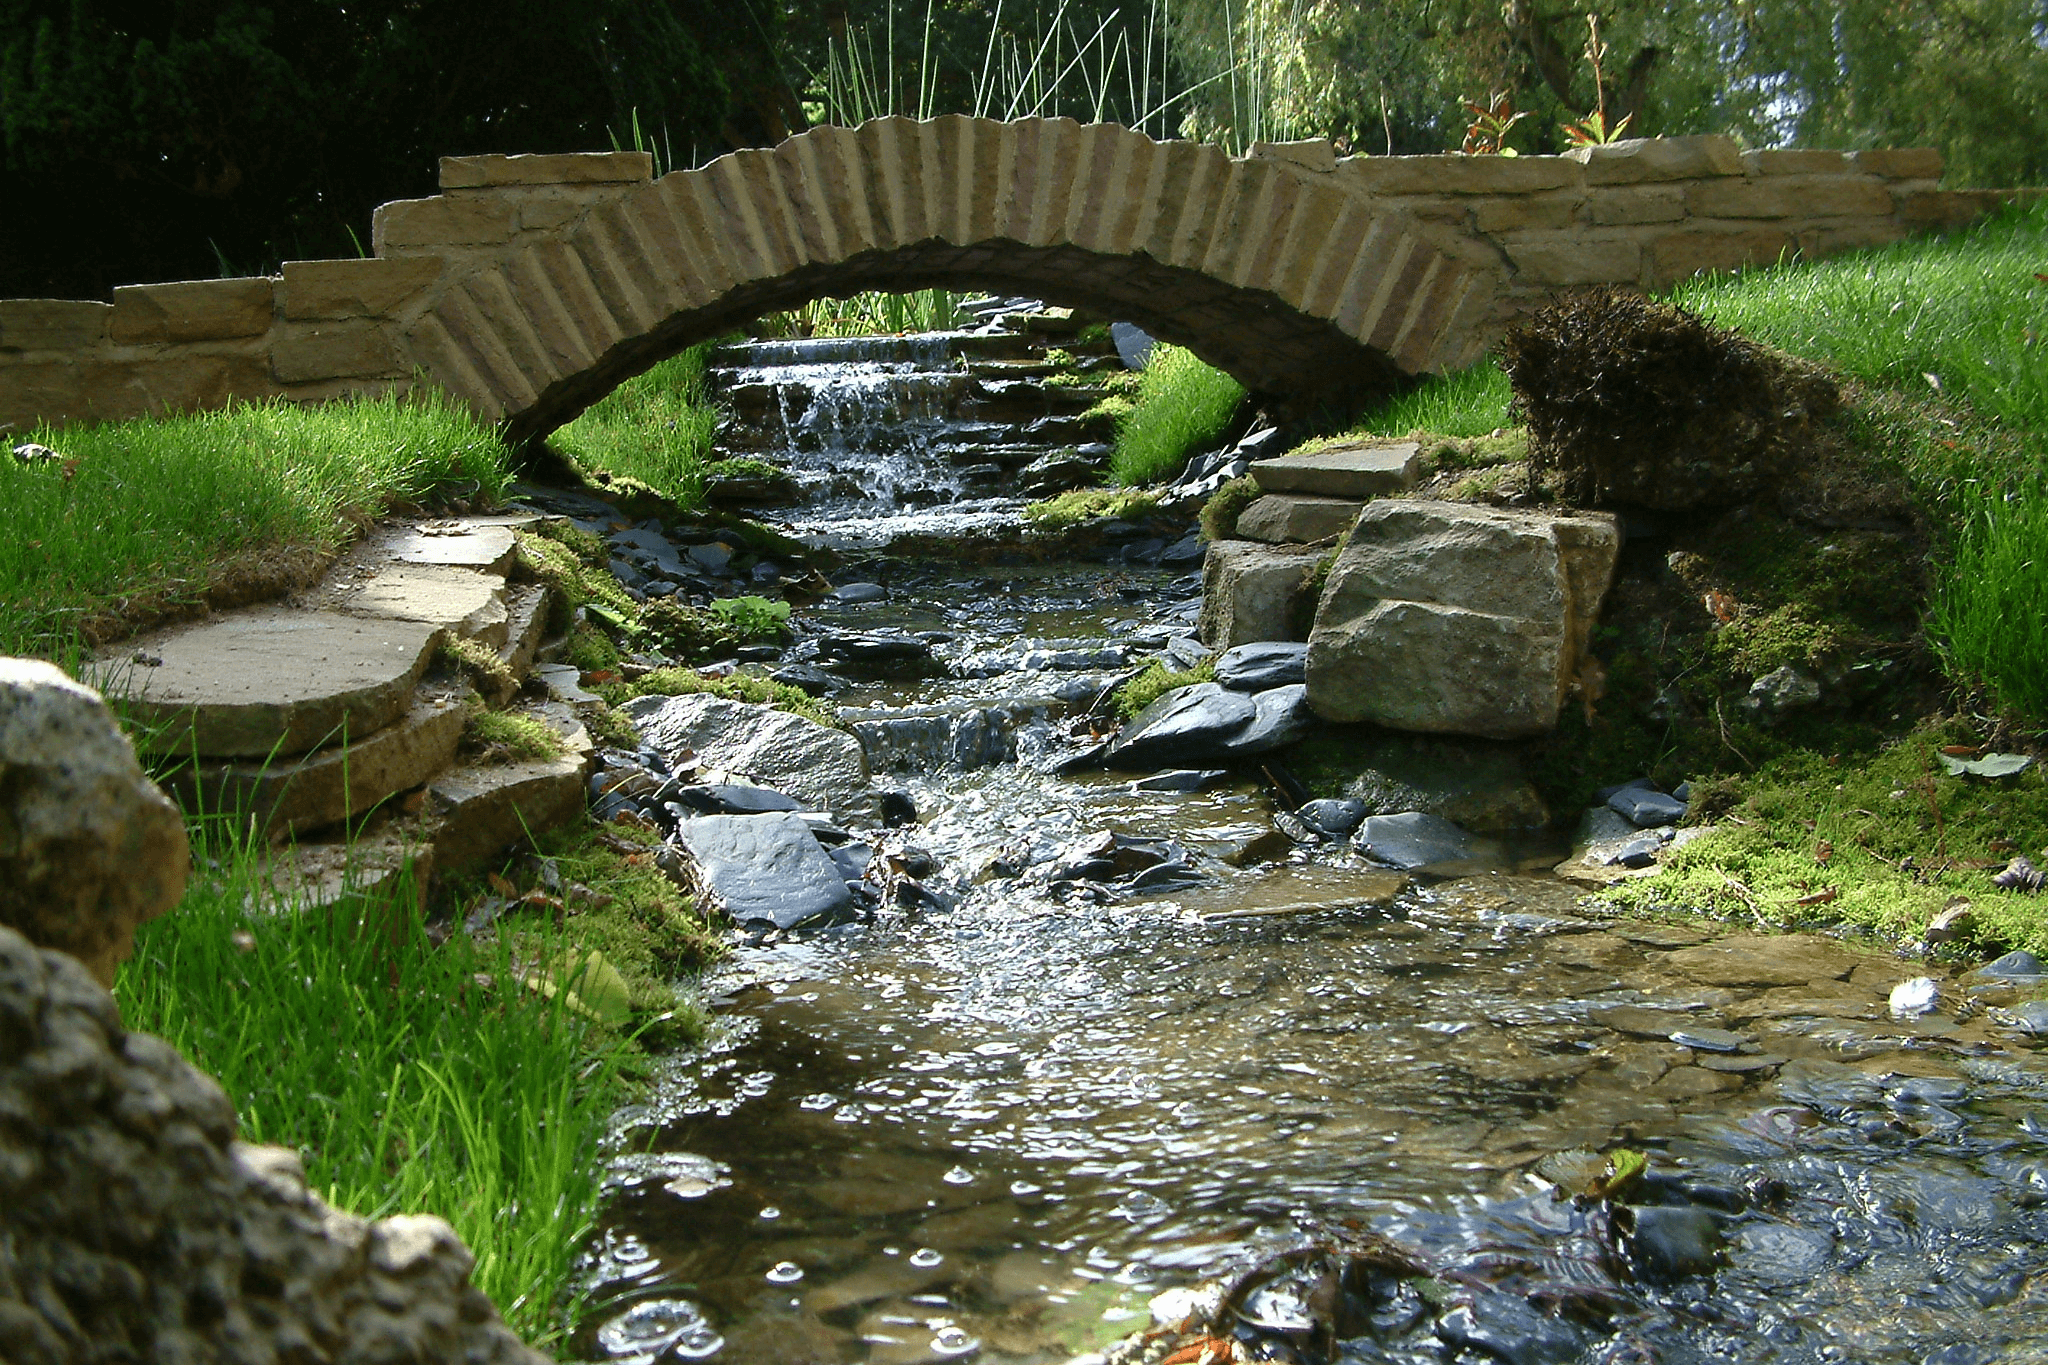 A stone arch bridge over a small stream